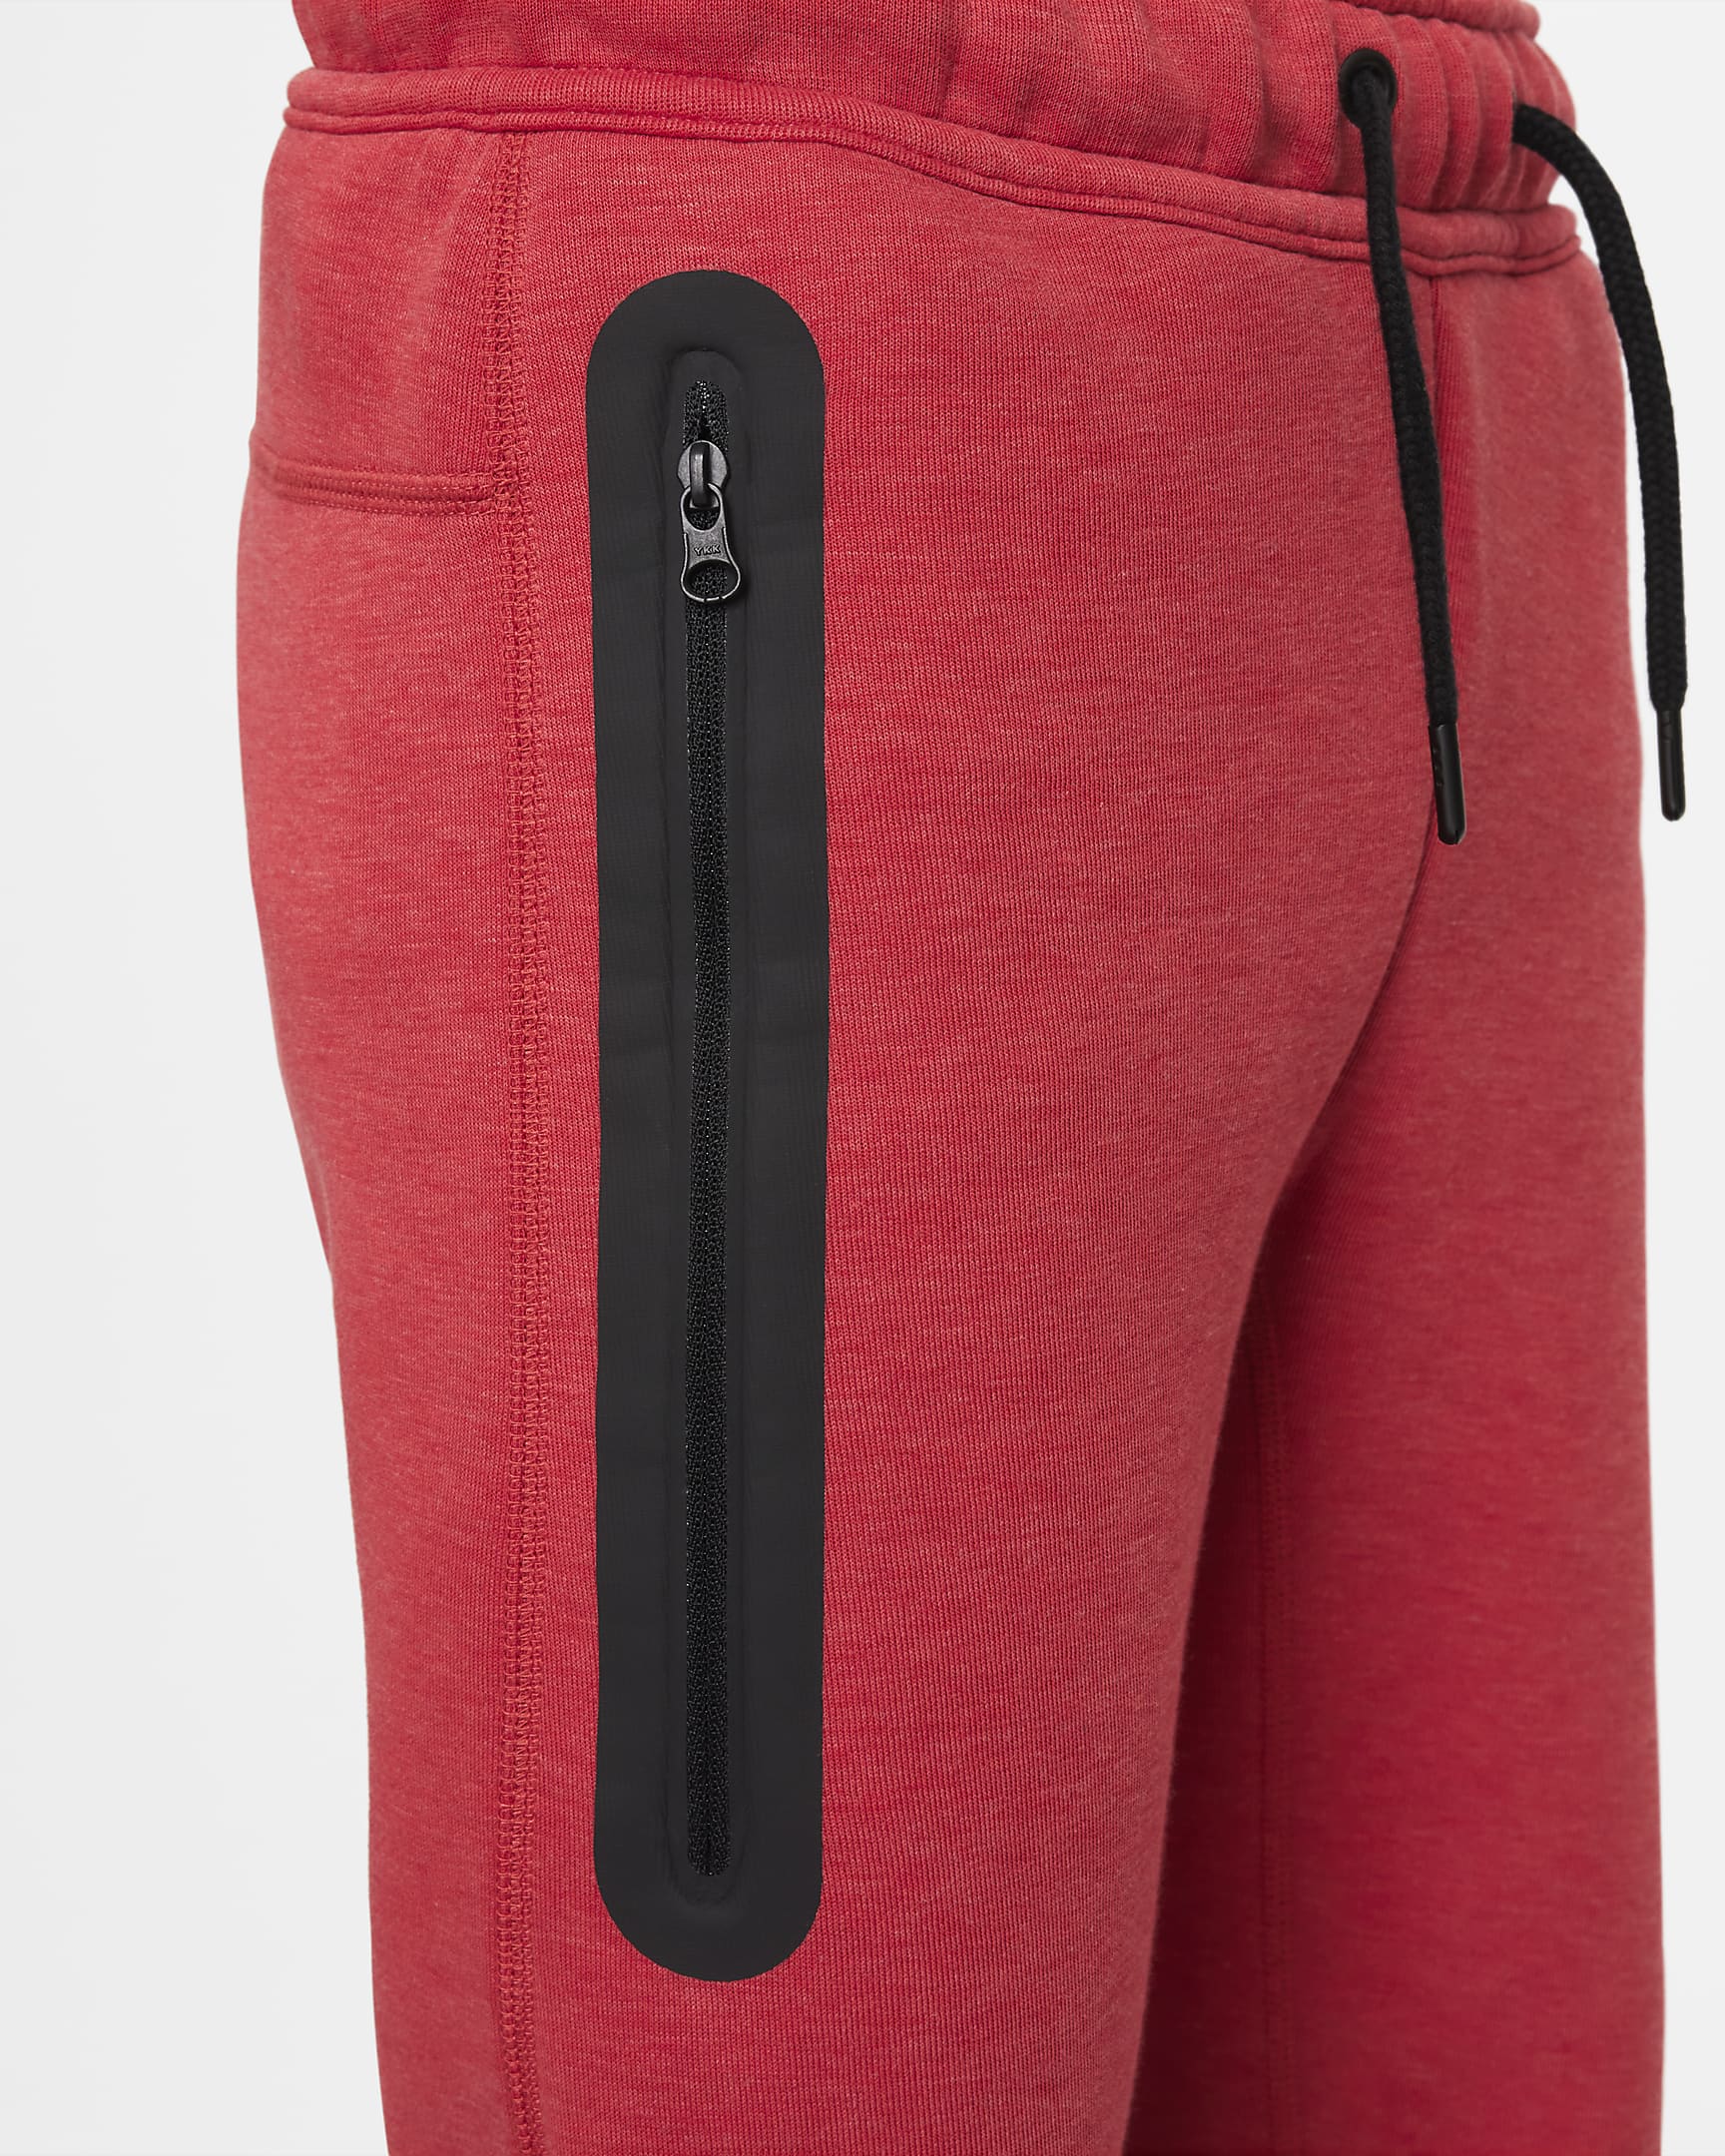 Nike Sportswear Tech Fleece Older Kids' (Boys') Trousers - Light University Red Heather/Black/Black